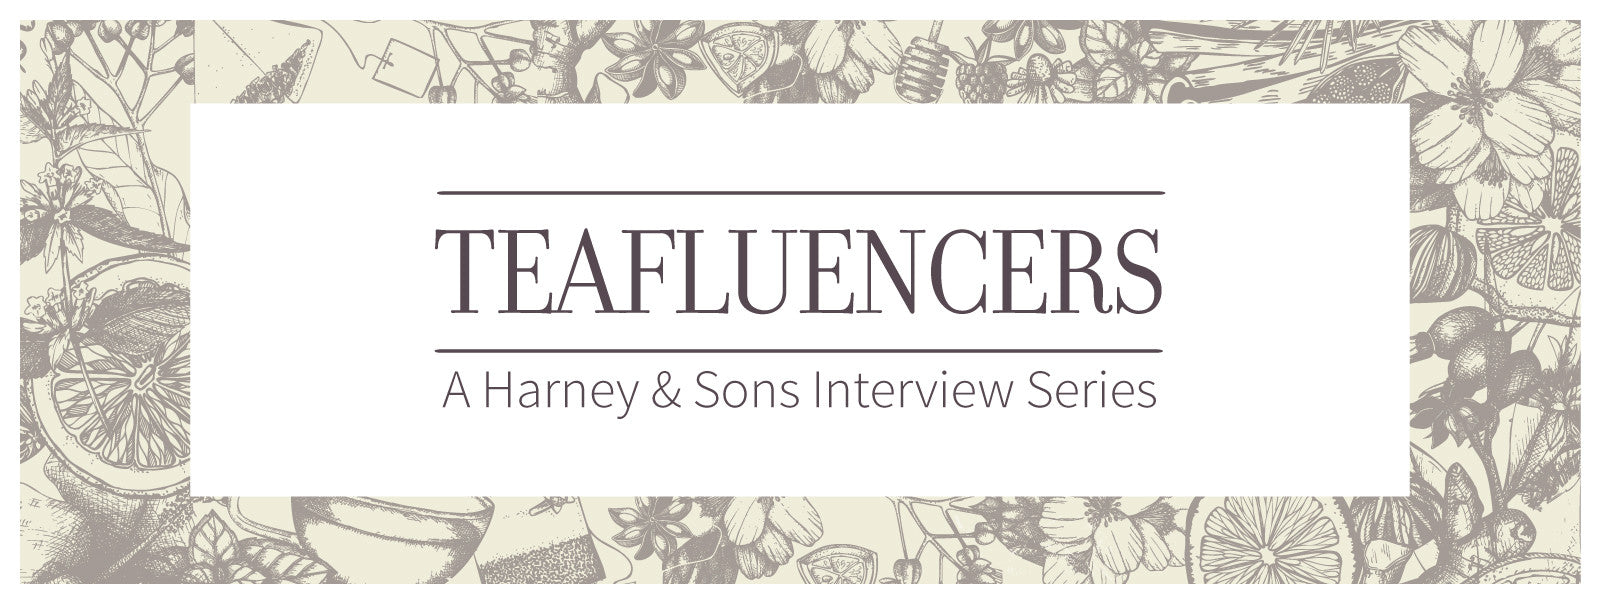 Harney & Sons Teafluencer | Stephanie of Tea Journal